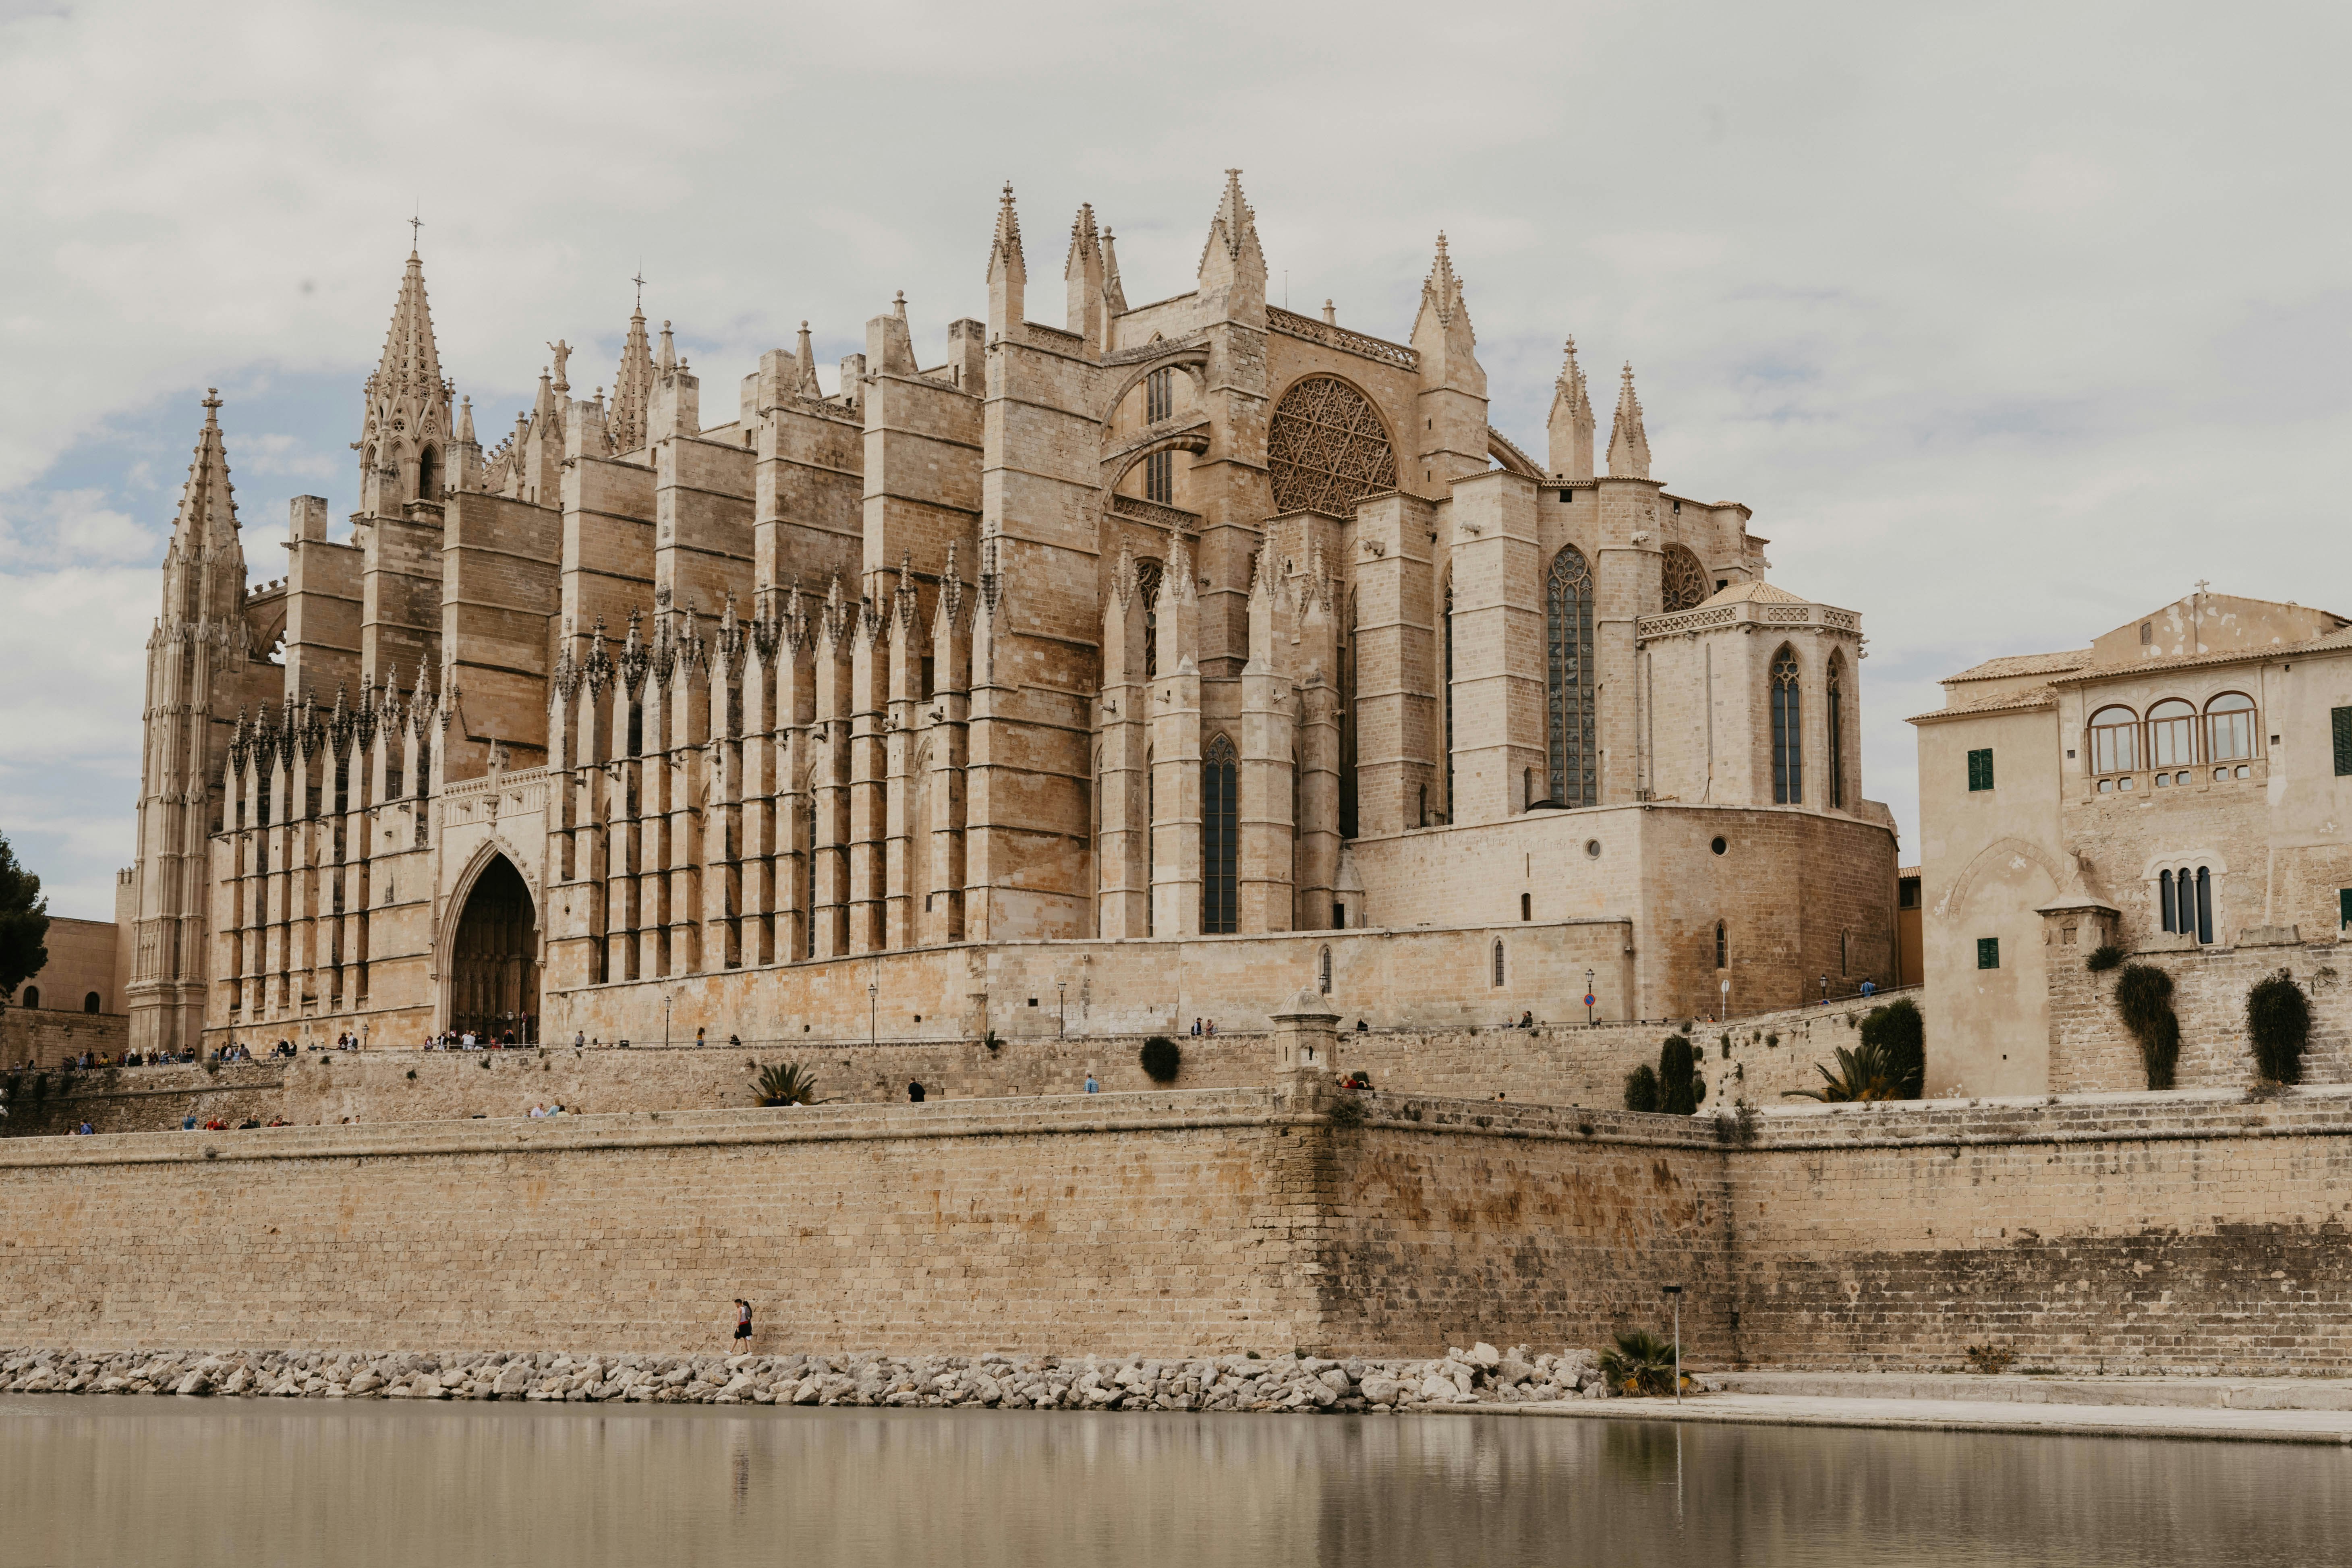 Cathedral of Santa Maria of Palma, Spain